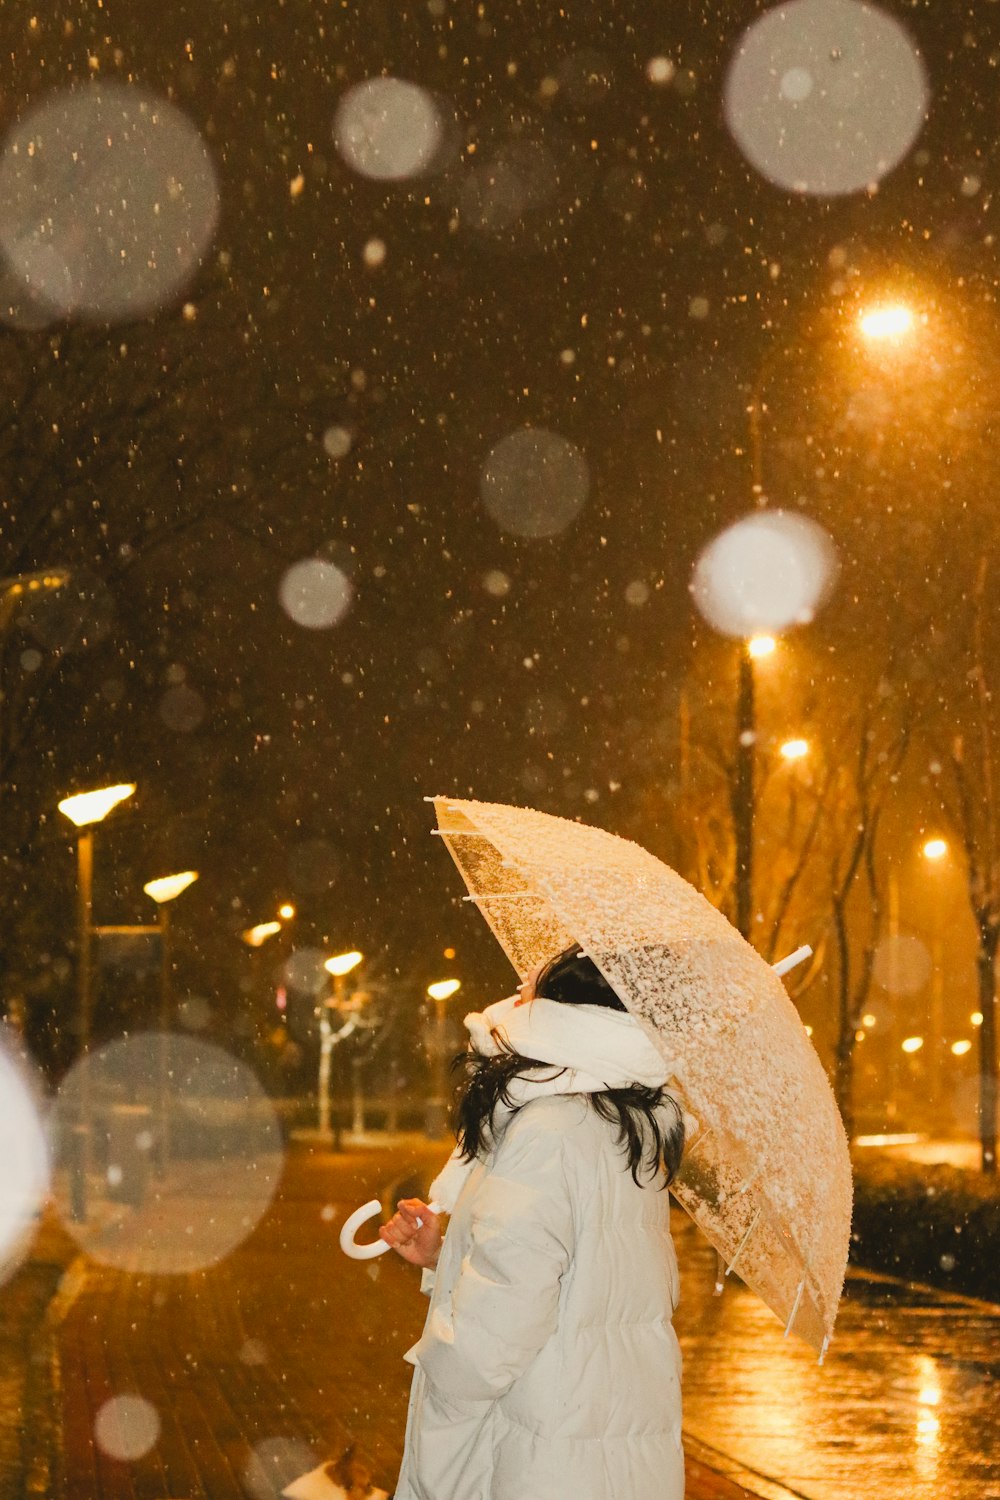 una mujer caminando por una calle sosteniendo un paraguas